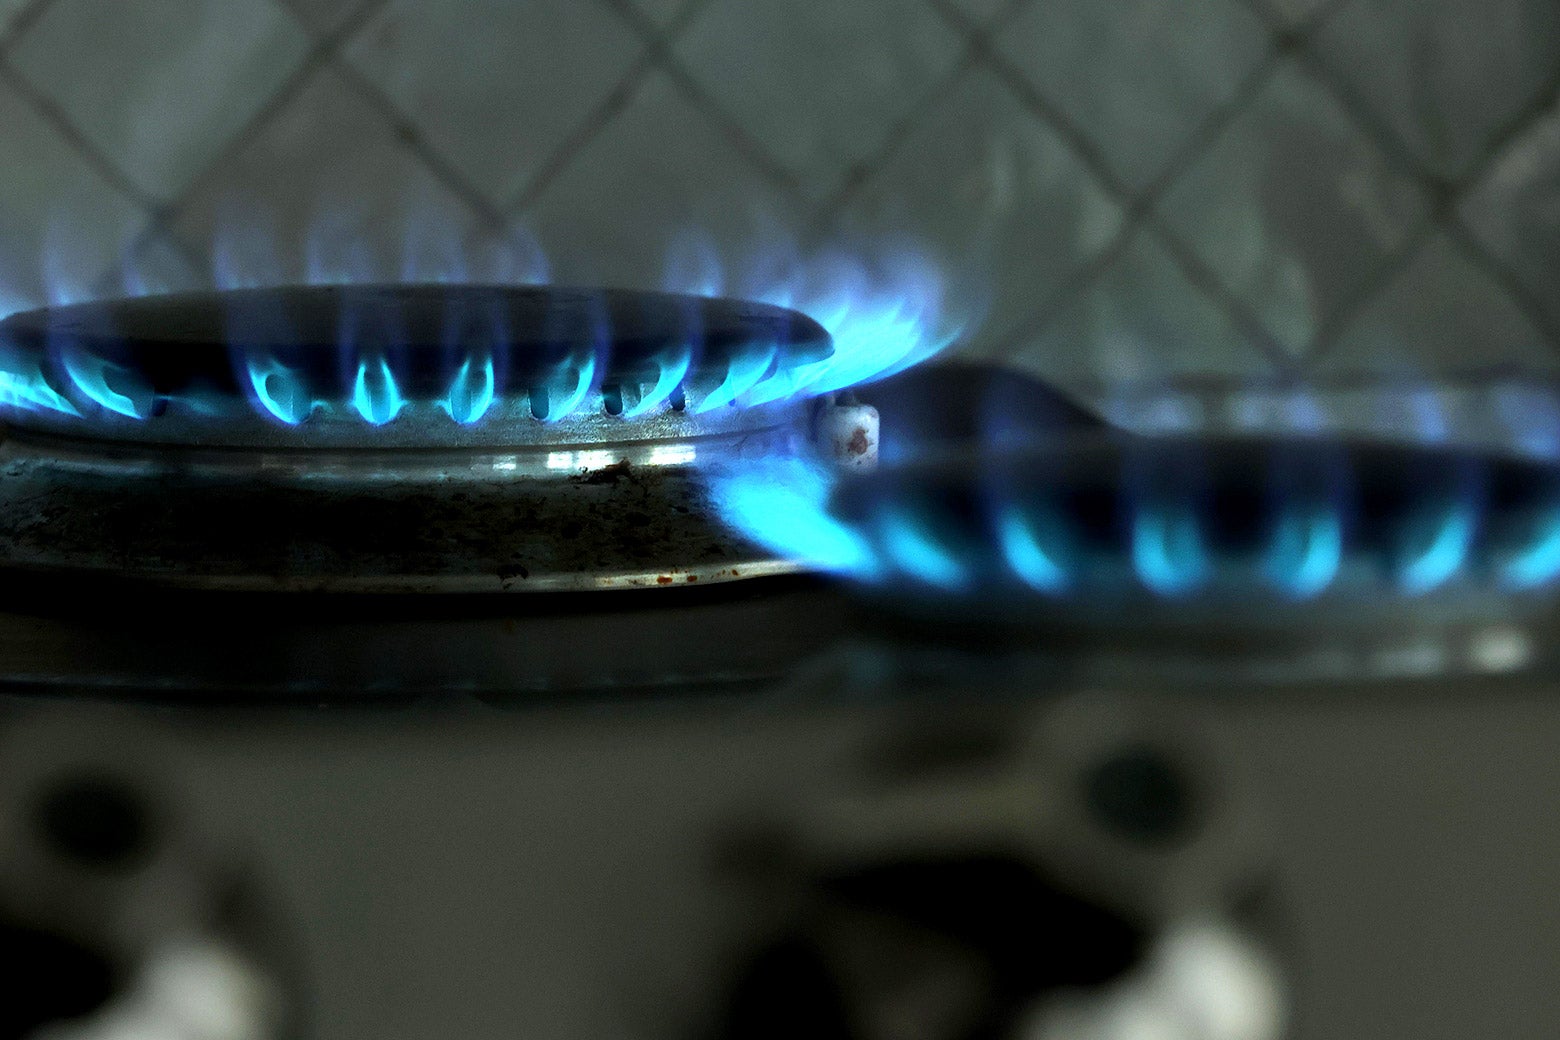 Two lit gas stove burners.